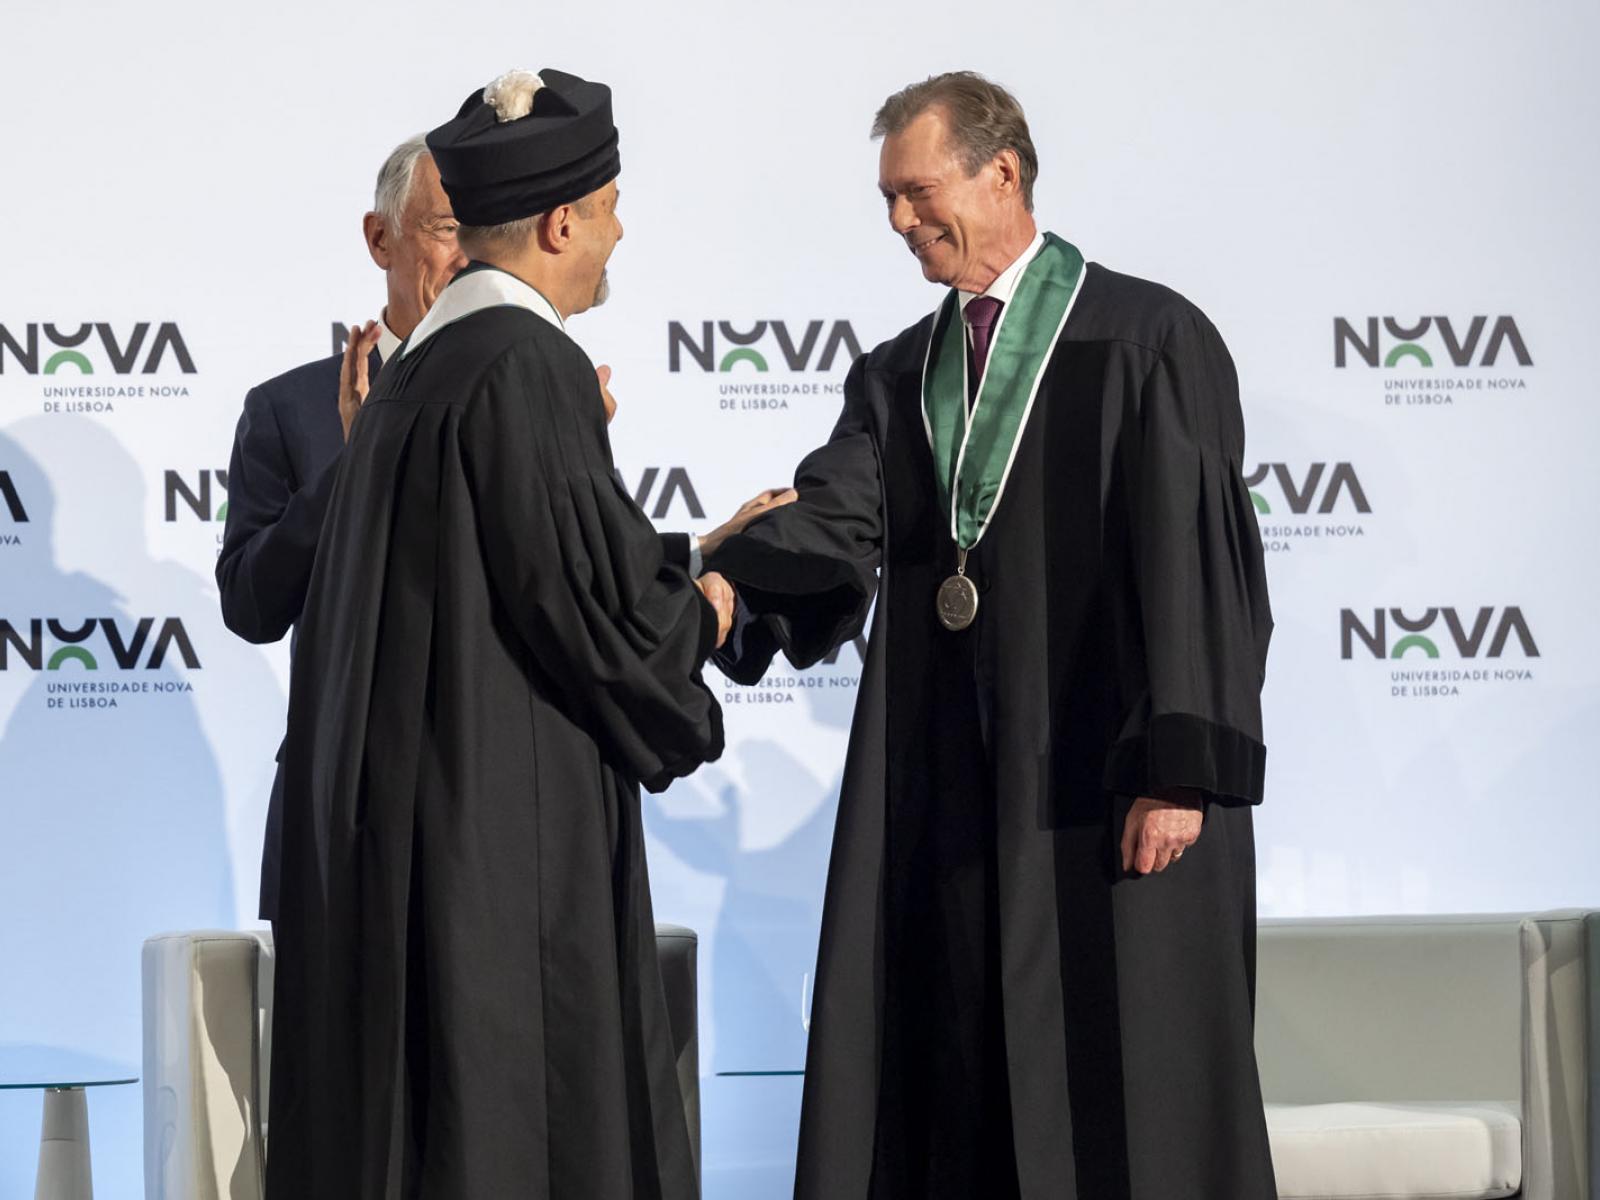 Le Grand-Duc reçoit le titre de docteur honoris causa de l'université